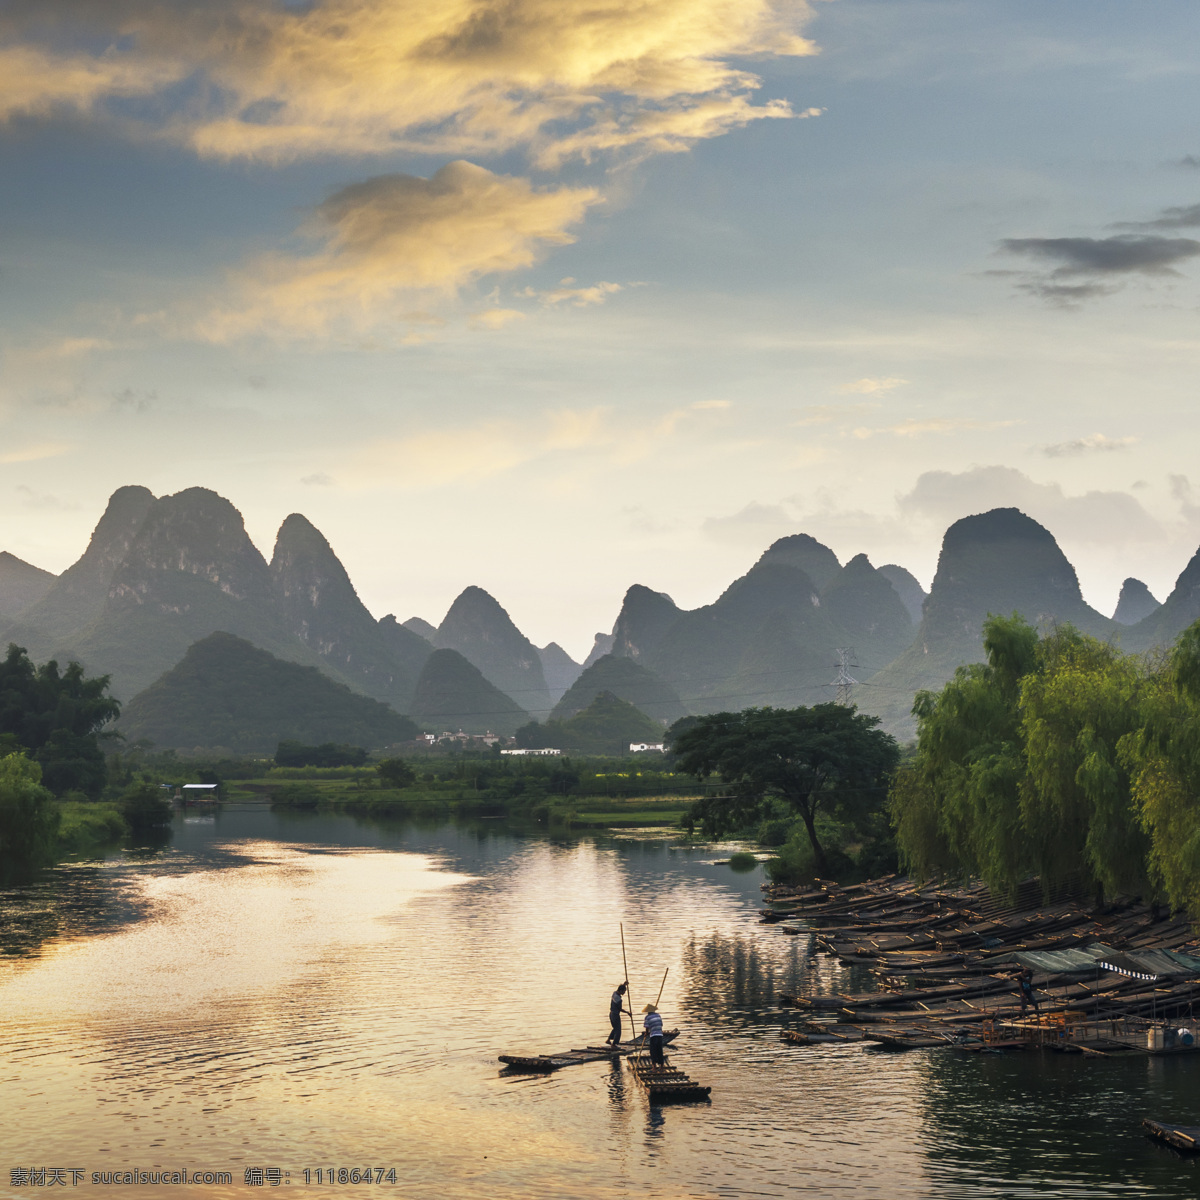 桂林 山水 风景图片 江南风景 桂林山水 远山 高山 湖水 渔船 山水风景 自然景观